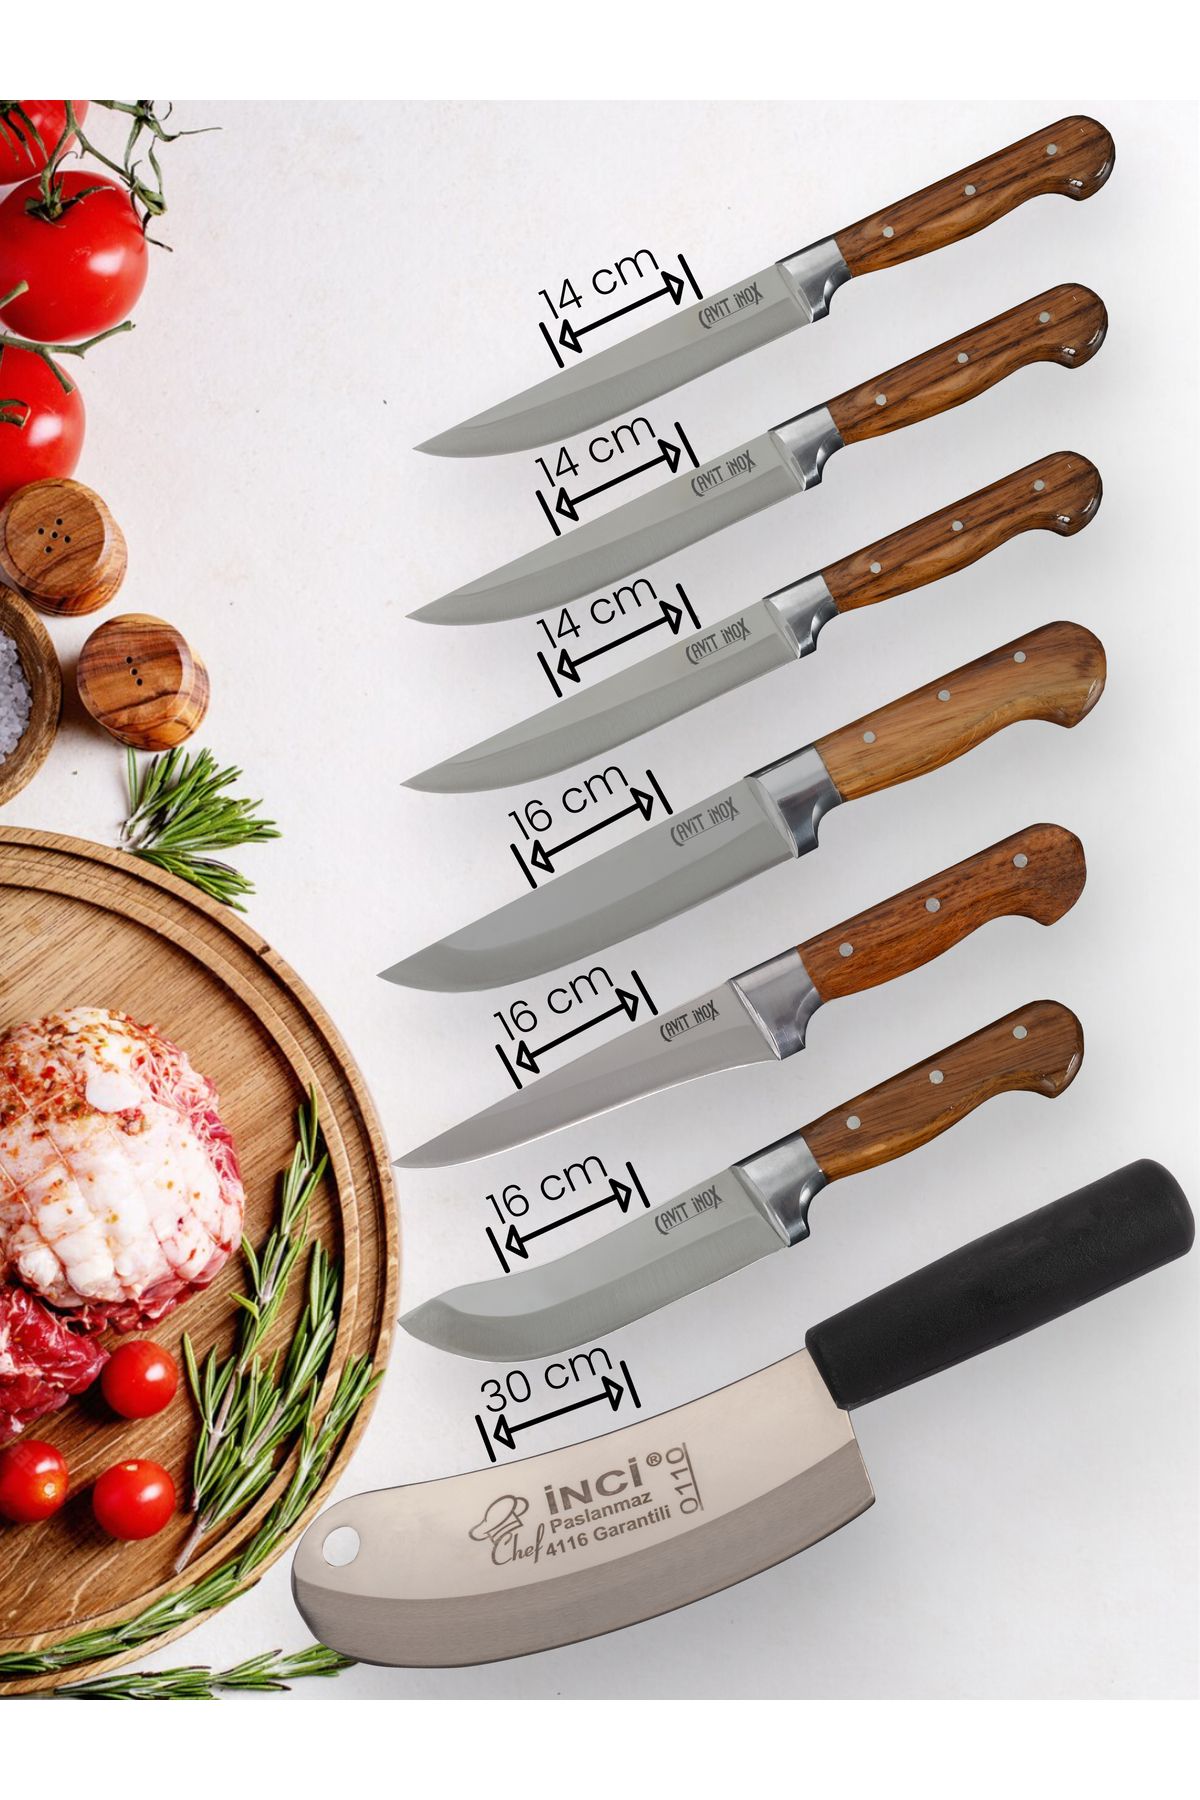 Cavit İnox Mutfak Bıçak Seti Et Ekmek Sebze Meyve Soğan Salata Bıçak Seti 7 Parça